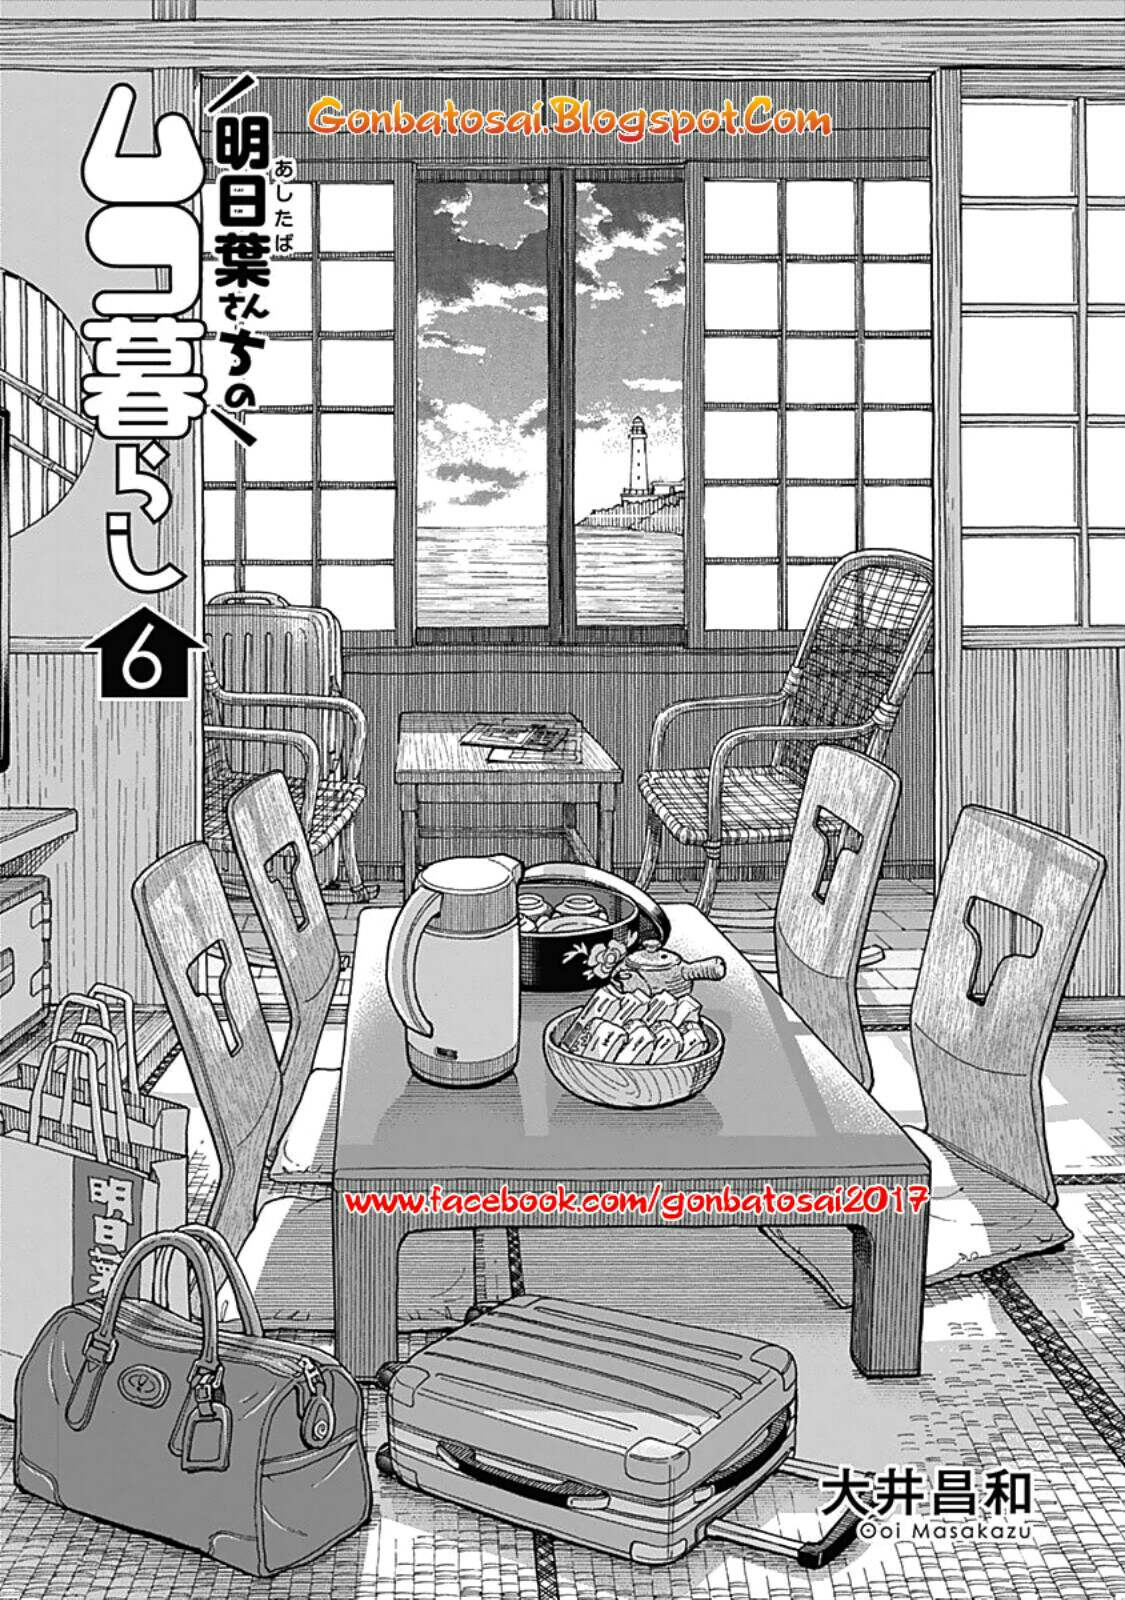 Ashitaba-San Chi No Muko Kurashi Chapter 41